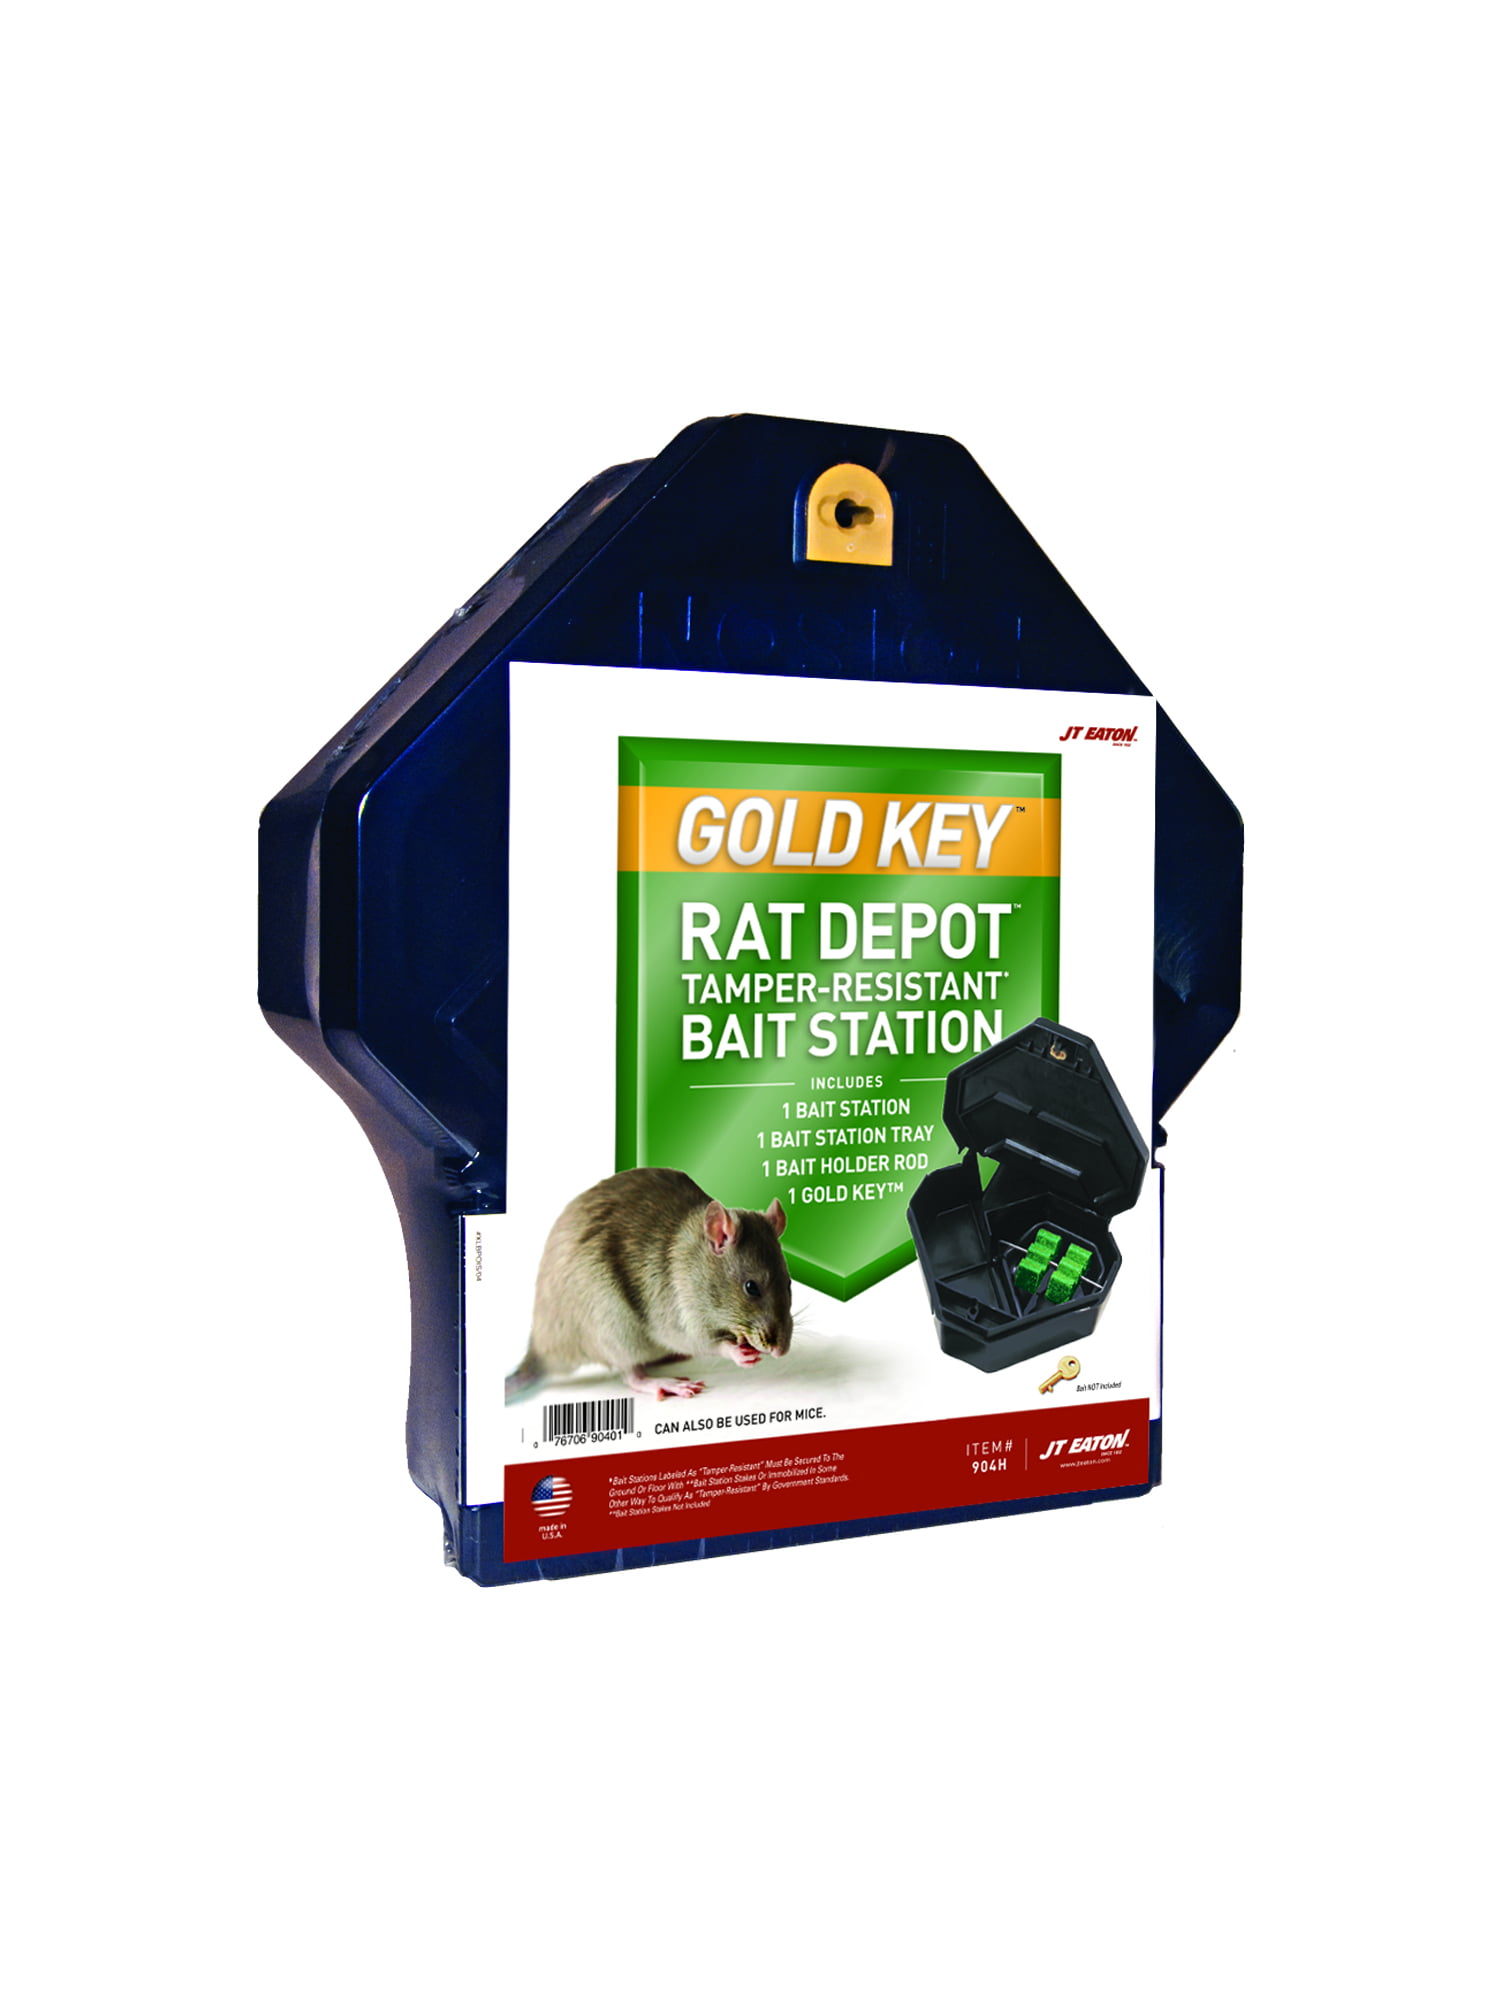 9 Pcs/lot Mouse Poison Chain Killing Bait Pest Control Rat Mice Killer Insect… 